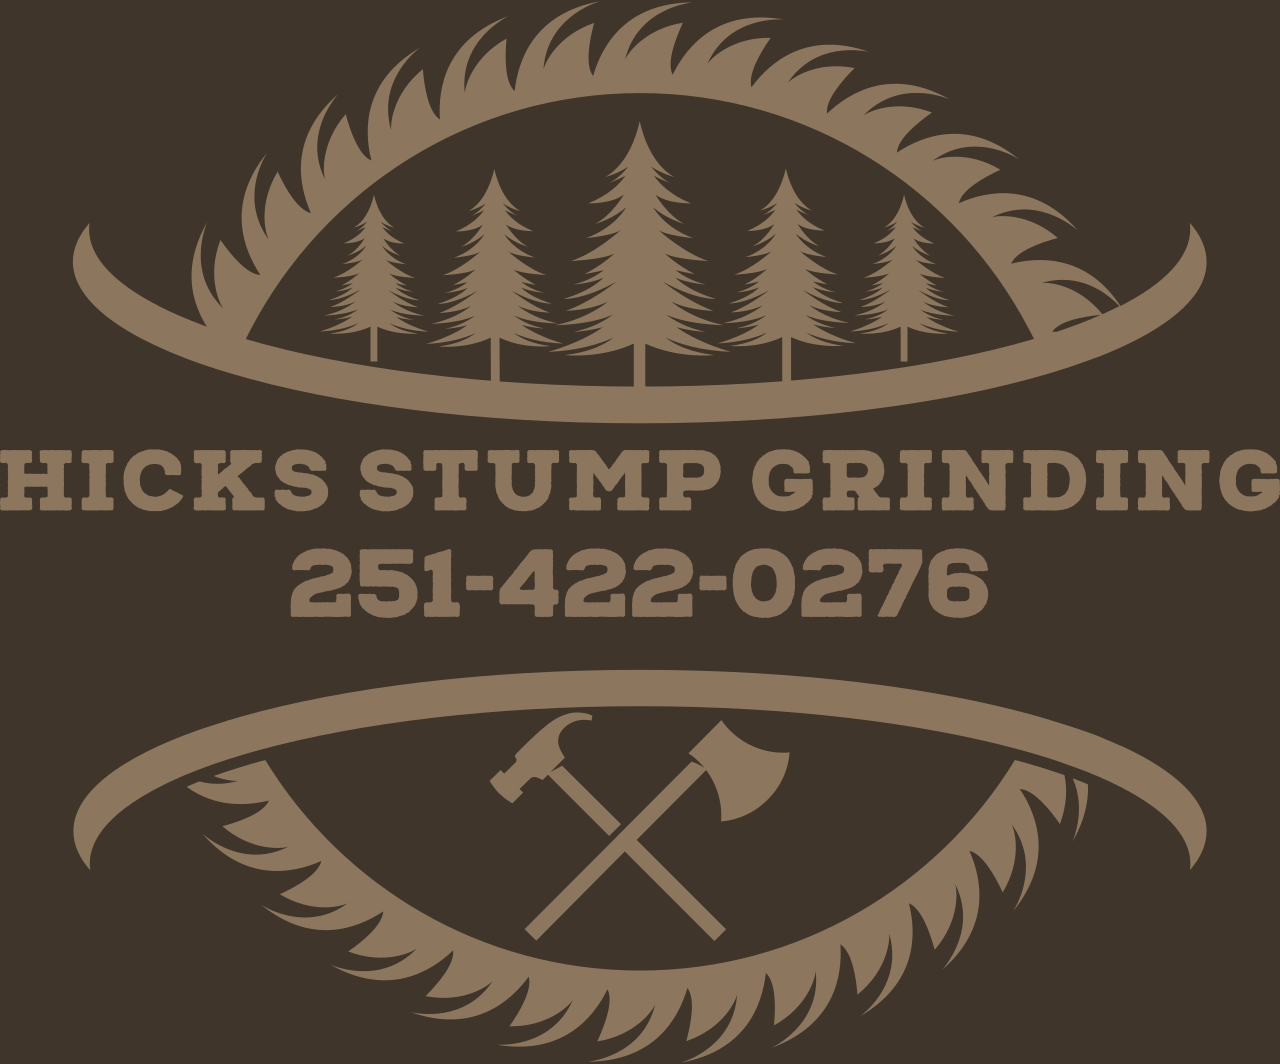 Hicks Stump Grinding's logo